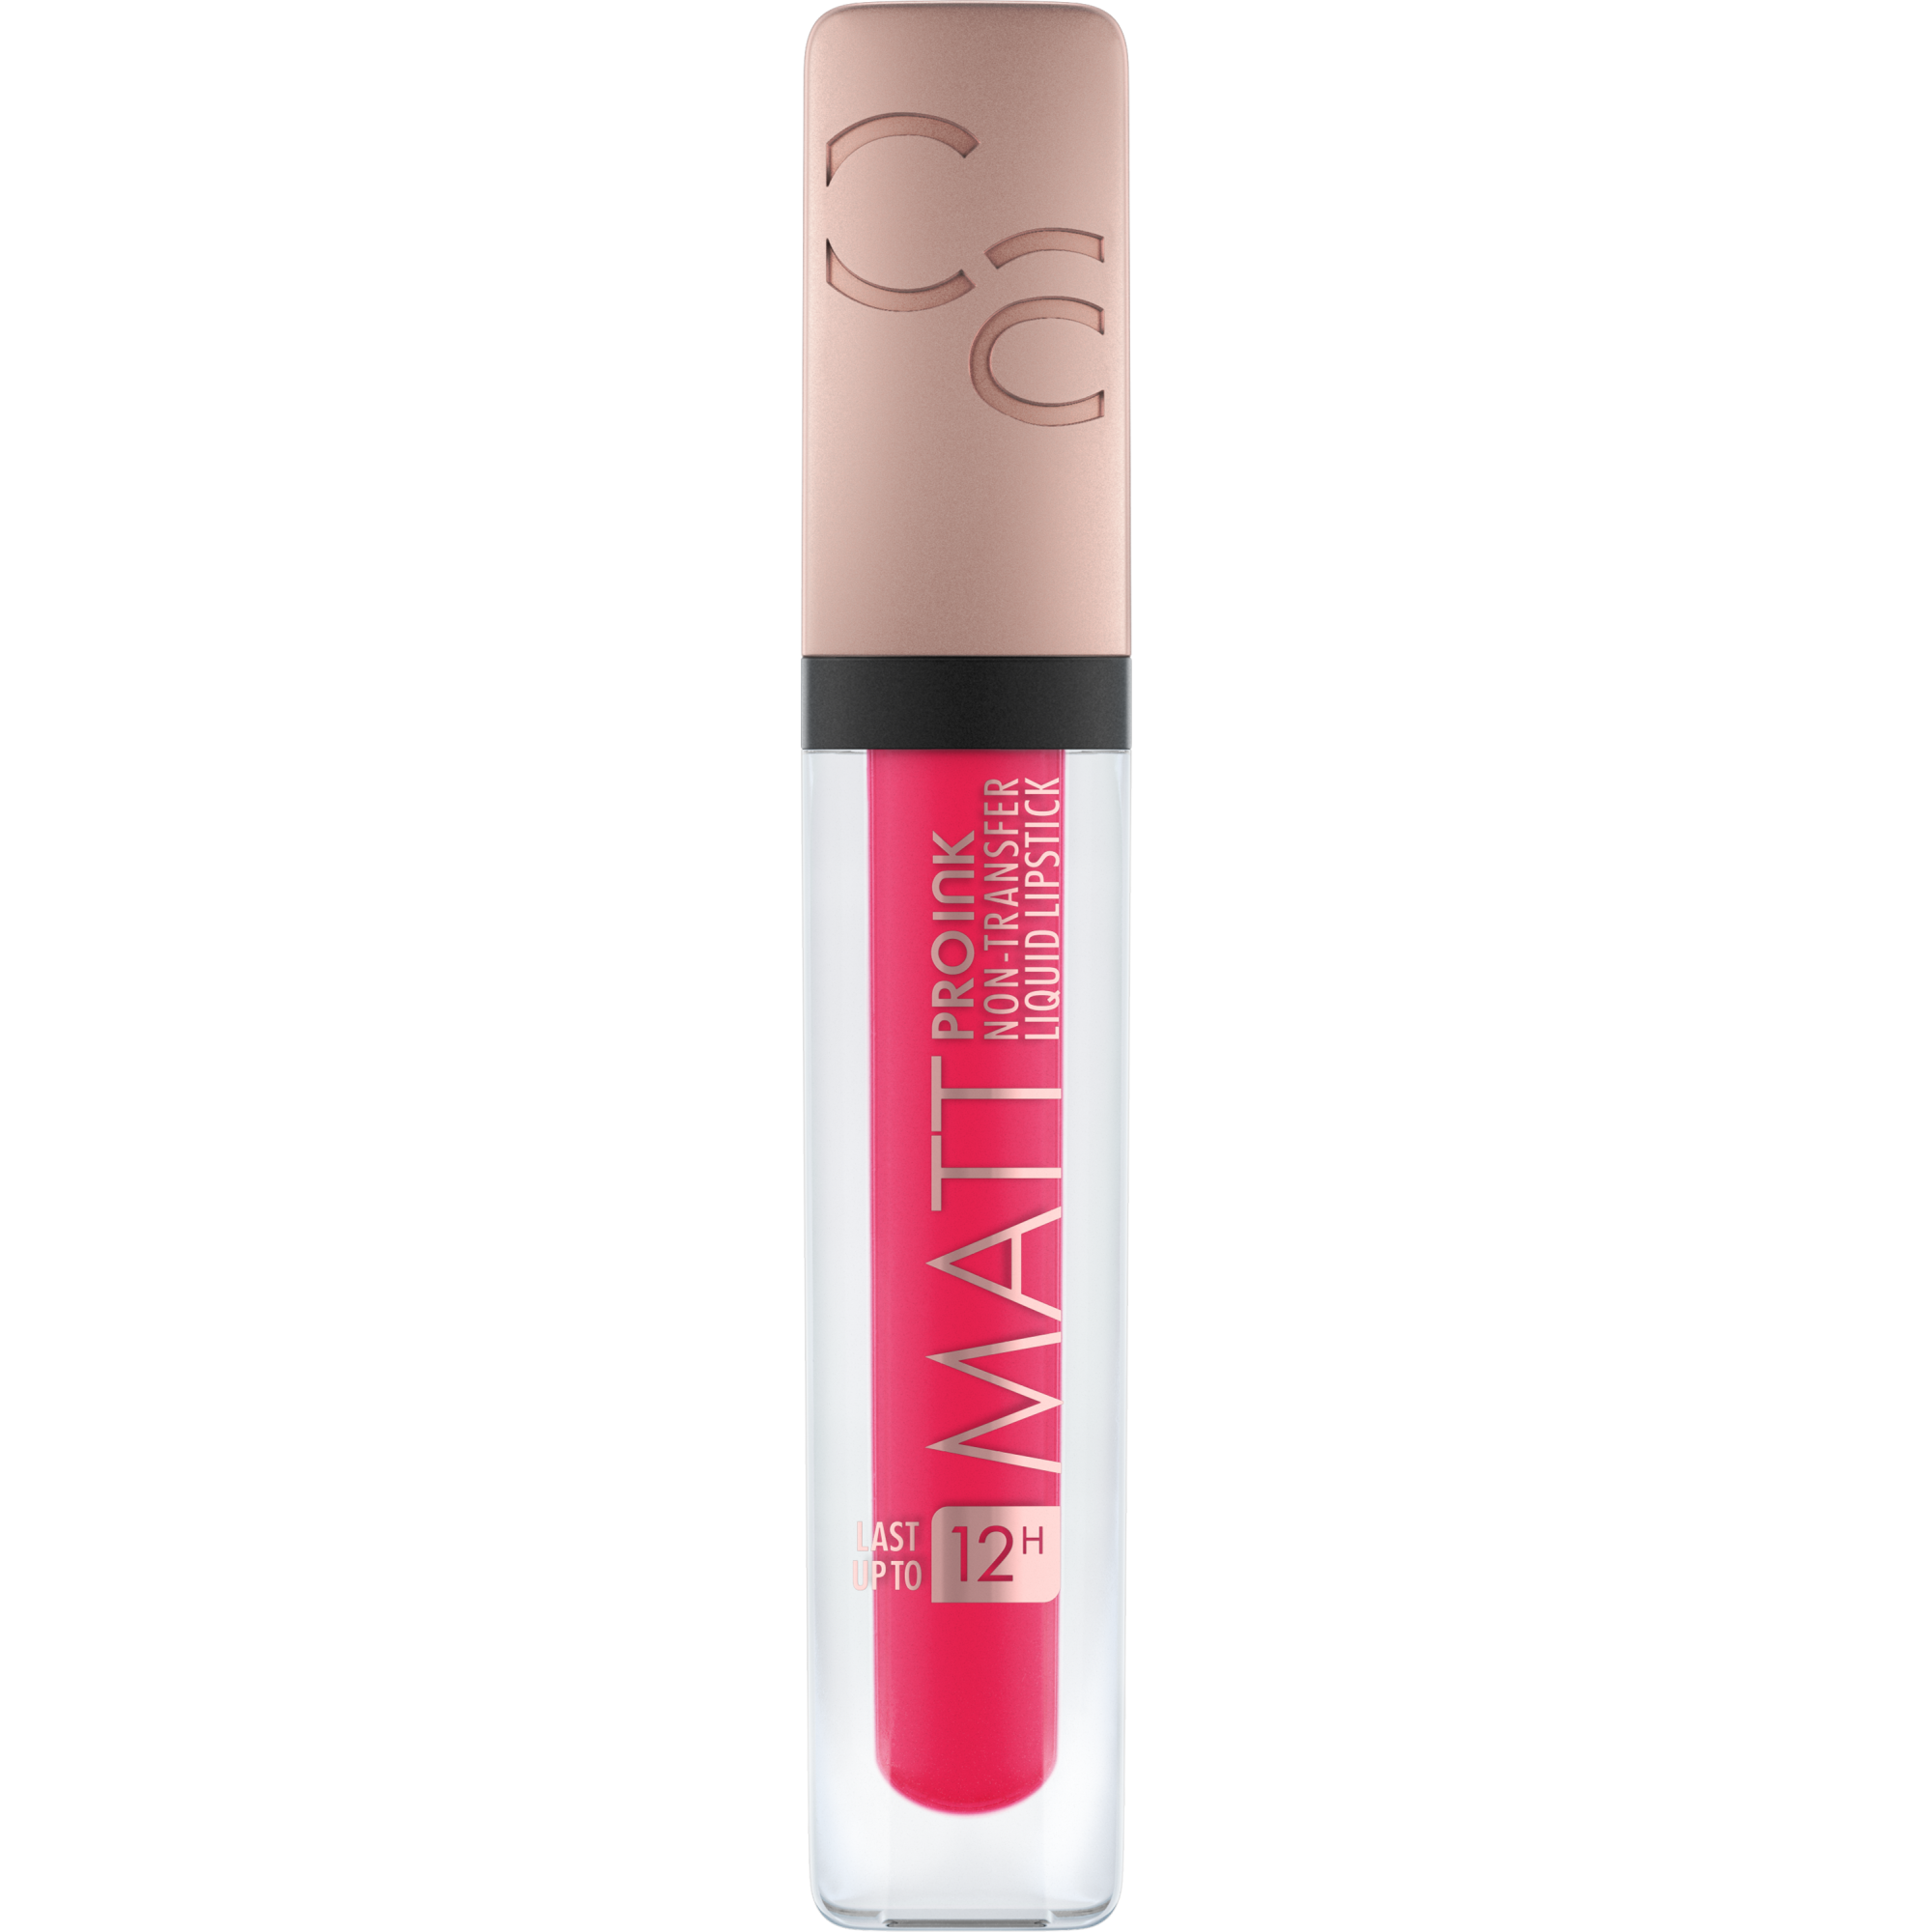 Matt Pro Ink Non-Transfer Liquid Lipstick rouge à lèvres liquide mat